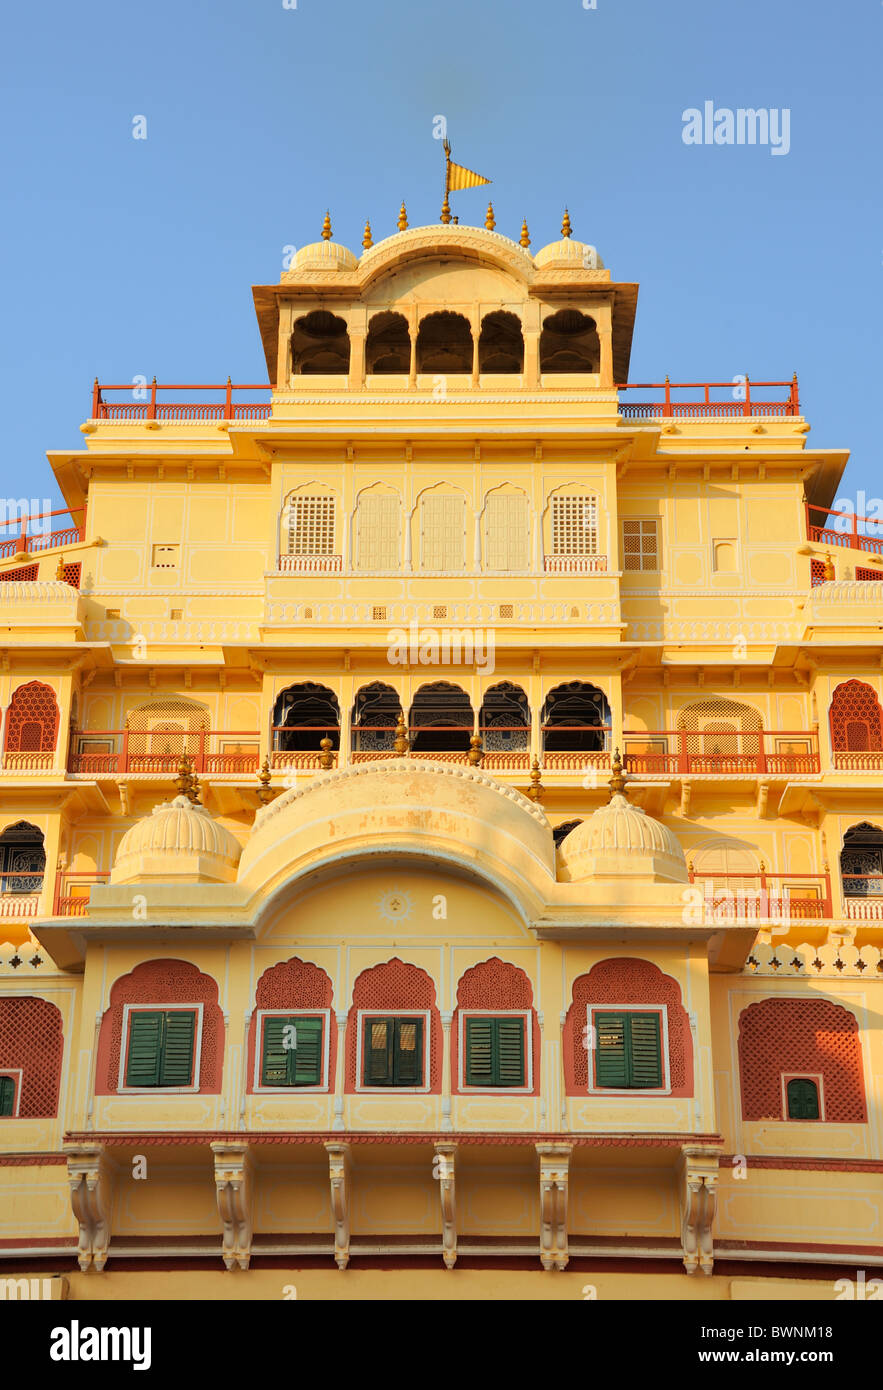 Chandra Mahal, City Palace, Jaipur. Stock Photo